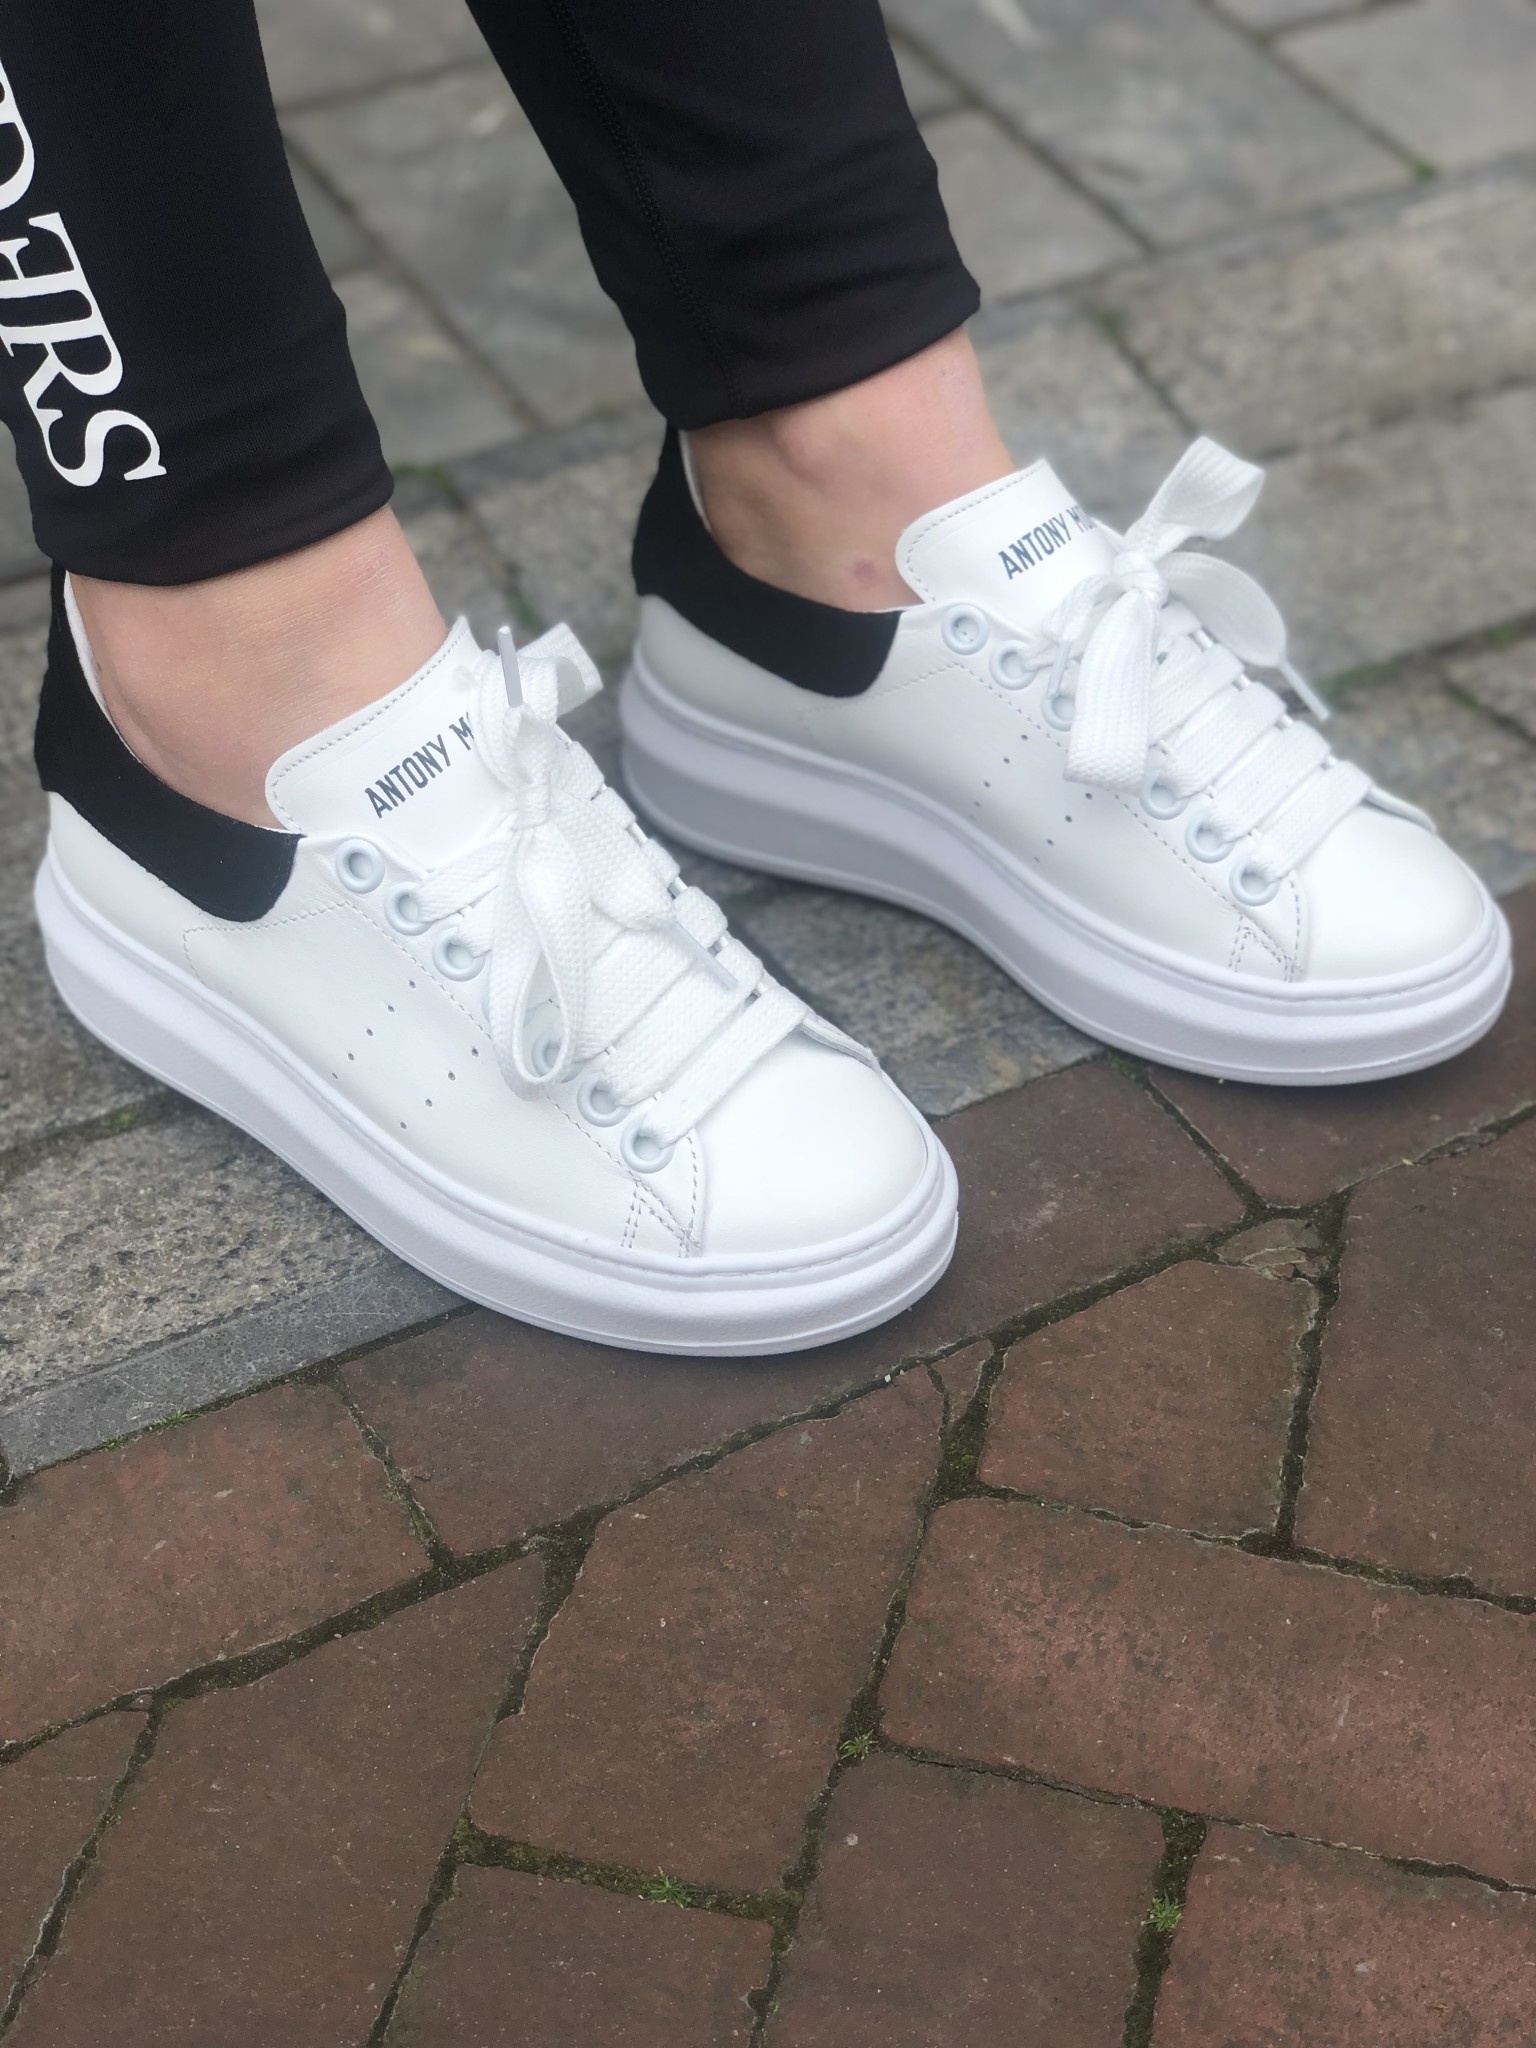 antony morato sneakers white